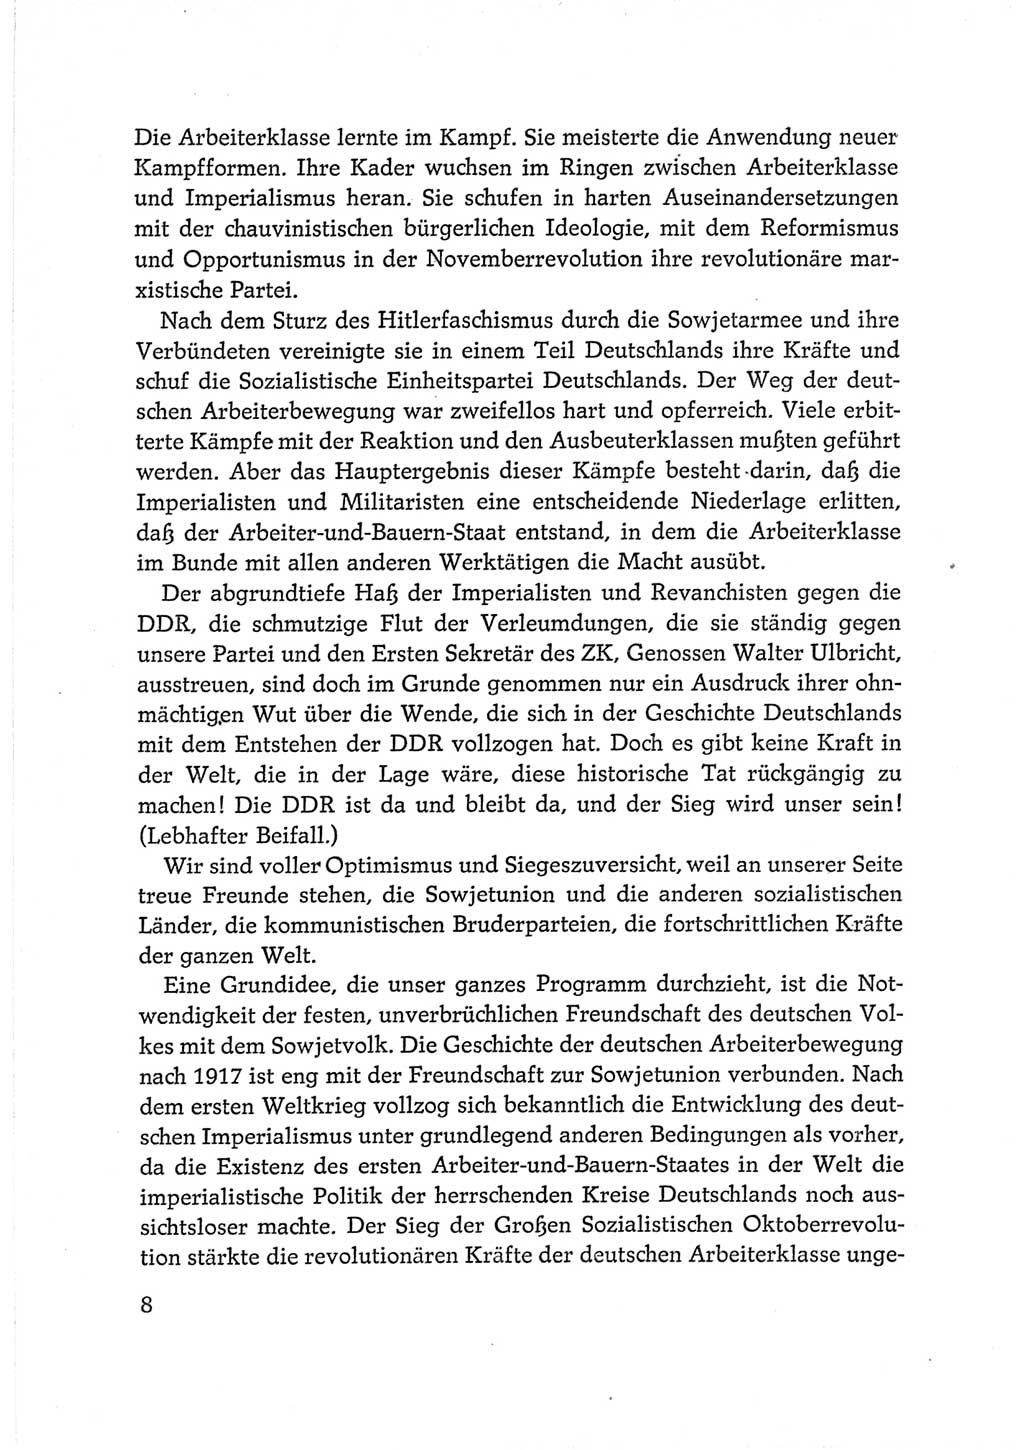 Protokoll der Verhandlungen des Ⅵ. Parteitages der Sozialistischen Einheitspartei Deutschlands (SED) [Deutsche Demokratische Republik (DDR)] 1963, Band Ⅱ, Seite 8 (Prot. Verh. Ⅵ. PT SED DDR 1963, Bd. Ⅱ, S. 8)